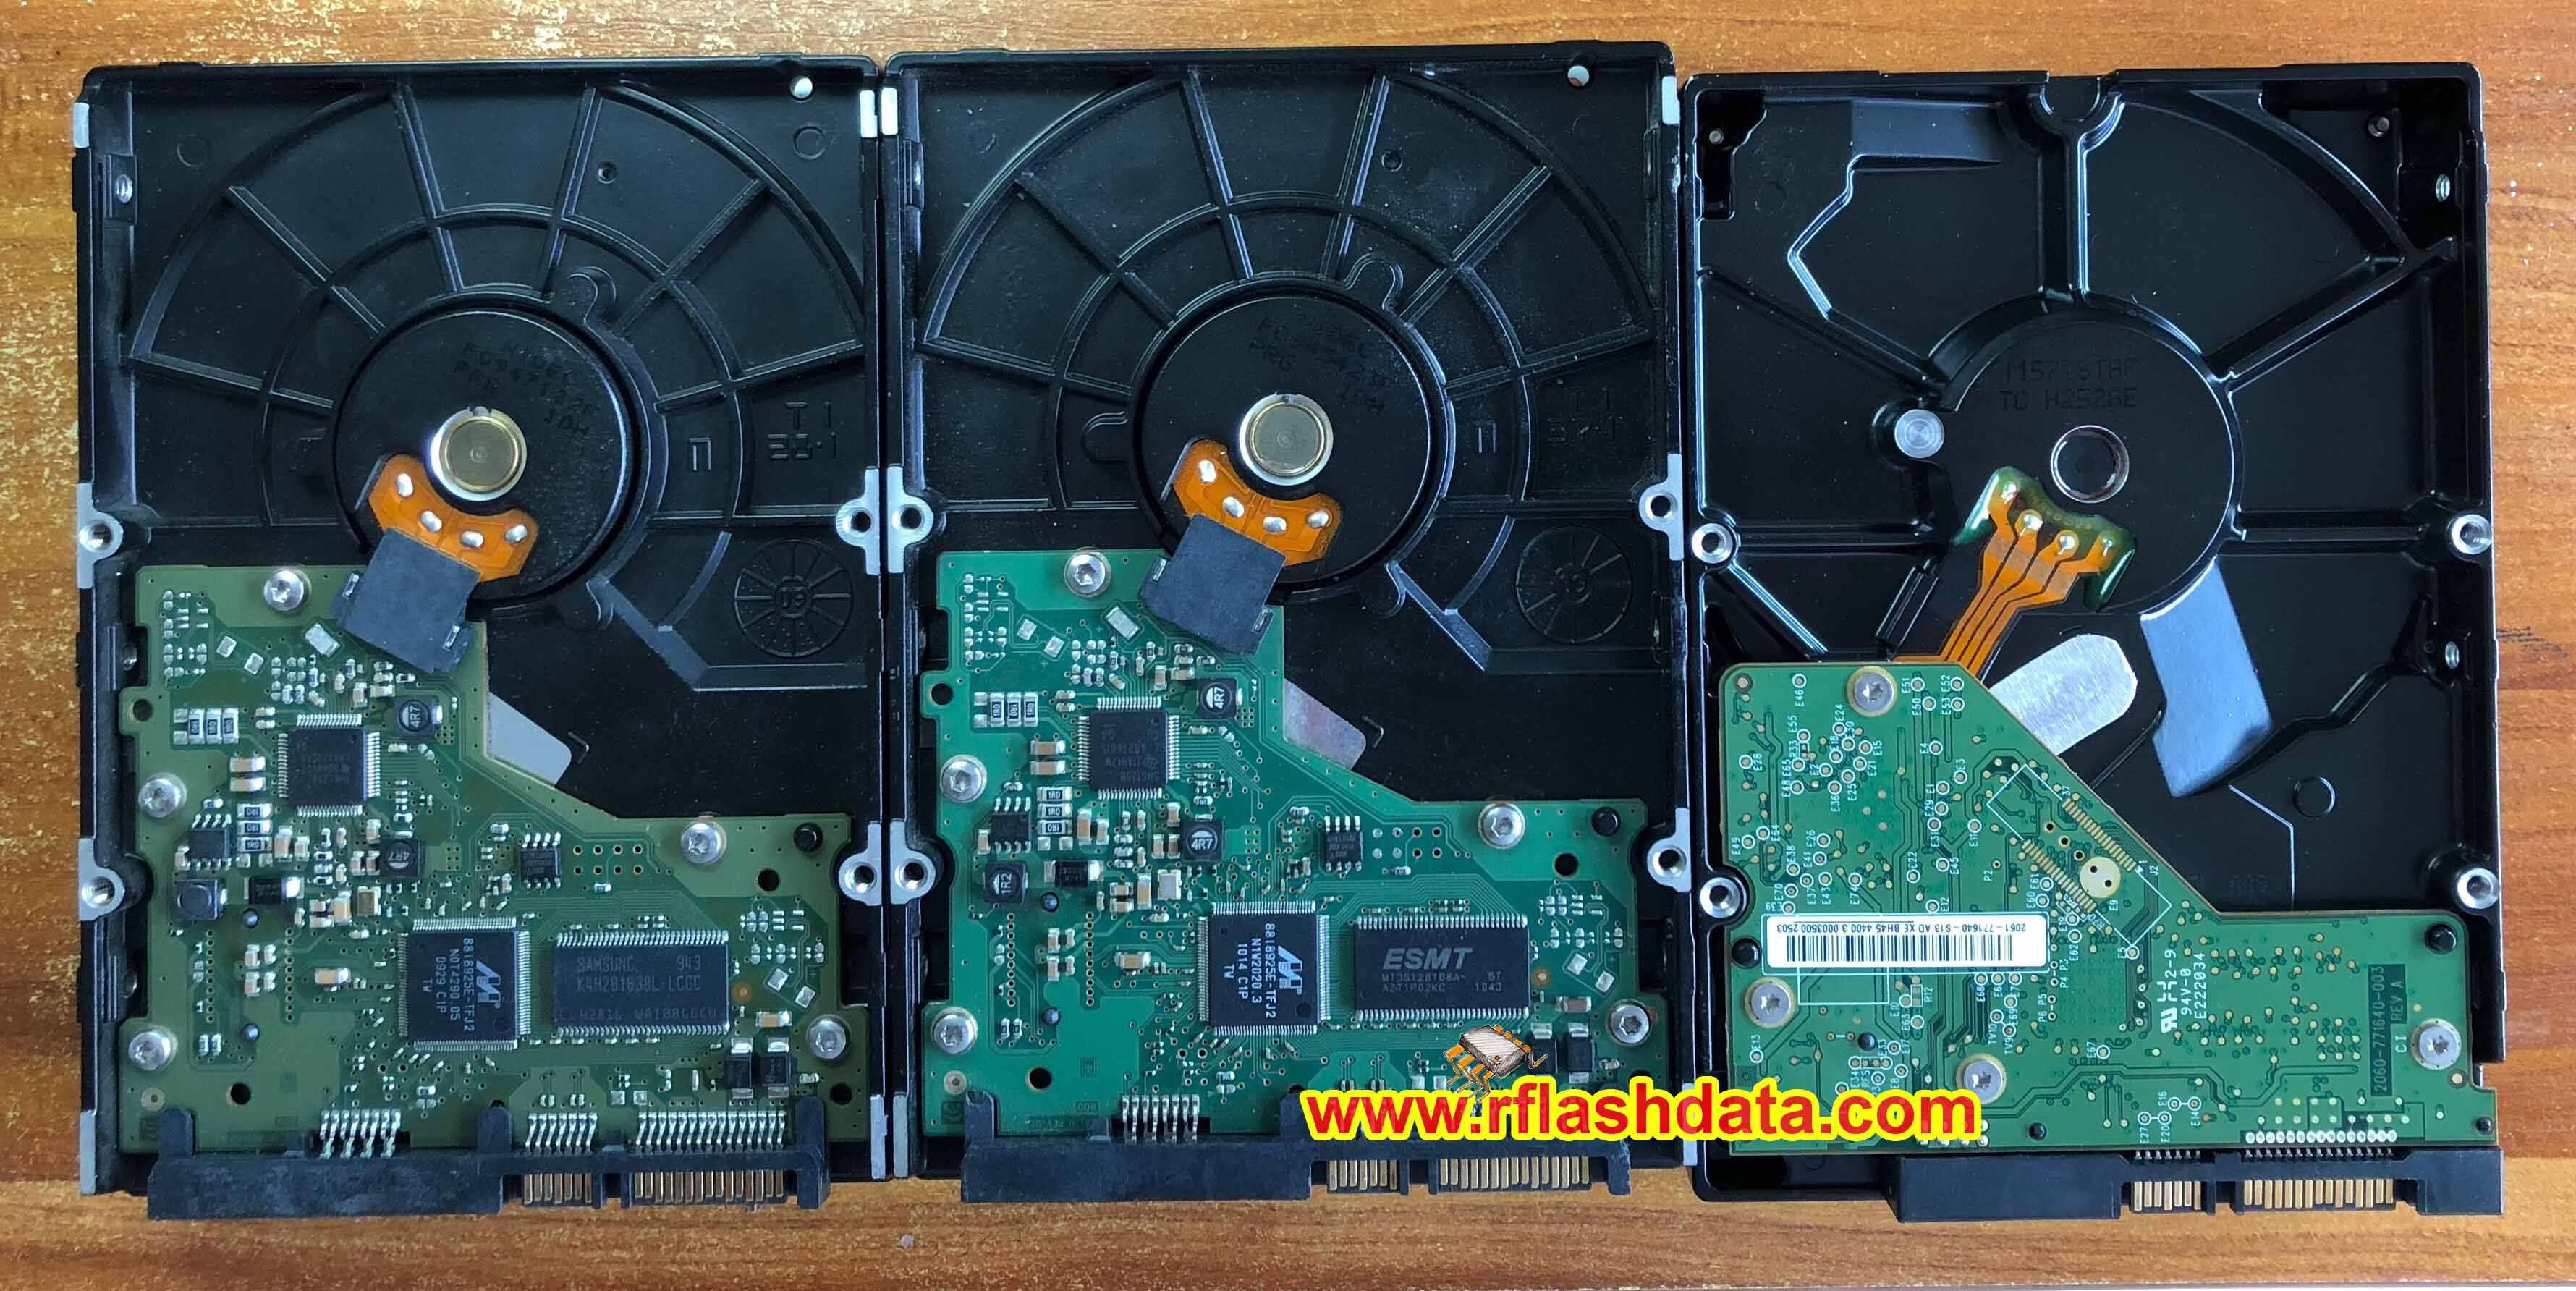 HD502HJ hdd data recovery-HD502HJ三星硬盘开盘数据恢复BF41-00263A硬盘电路板